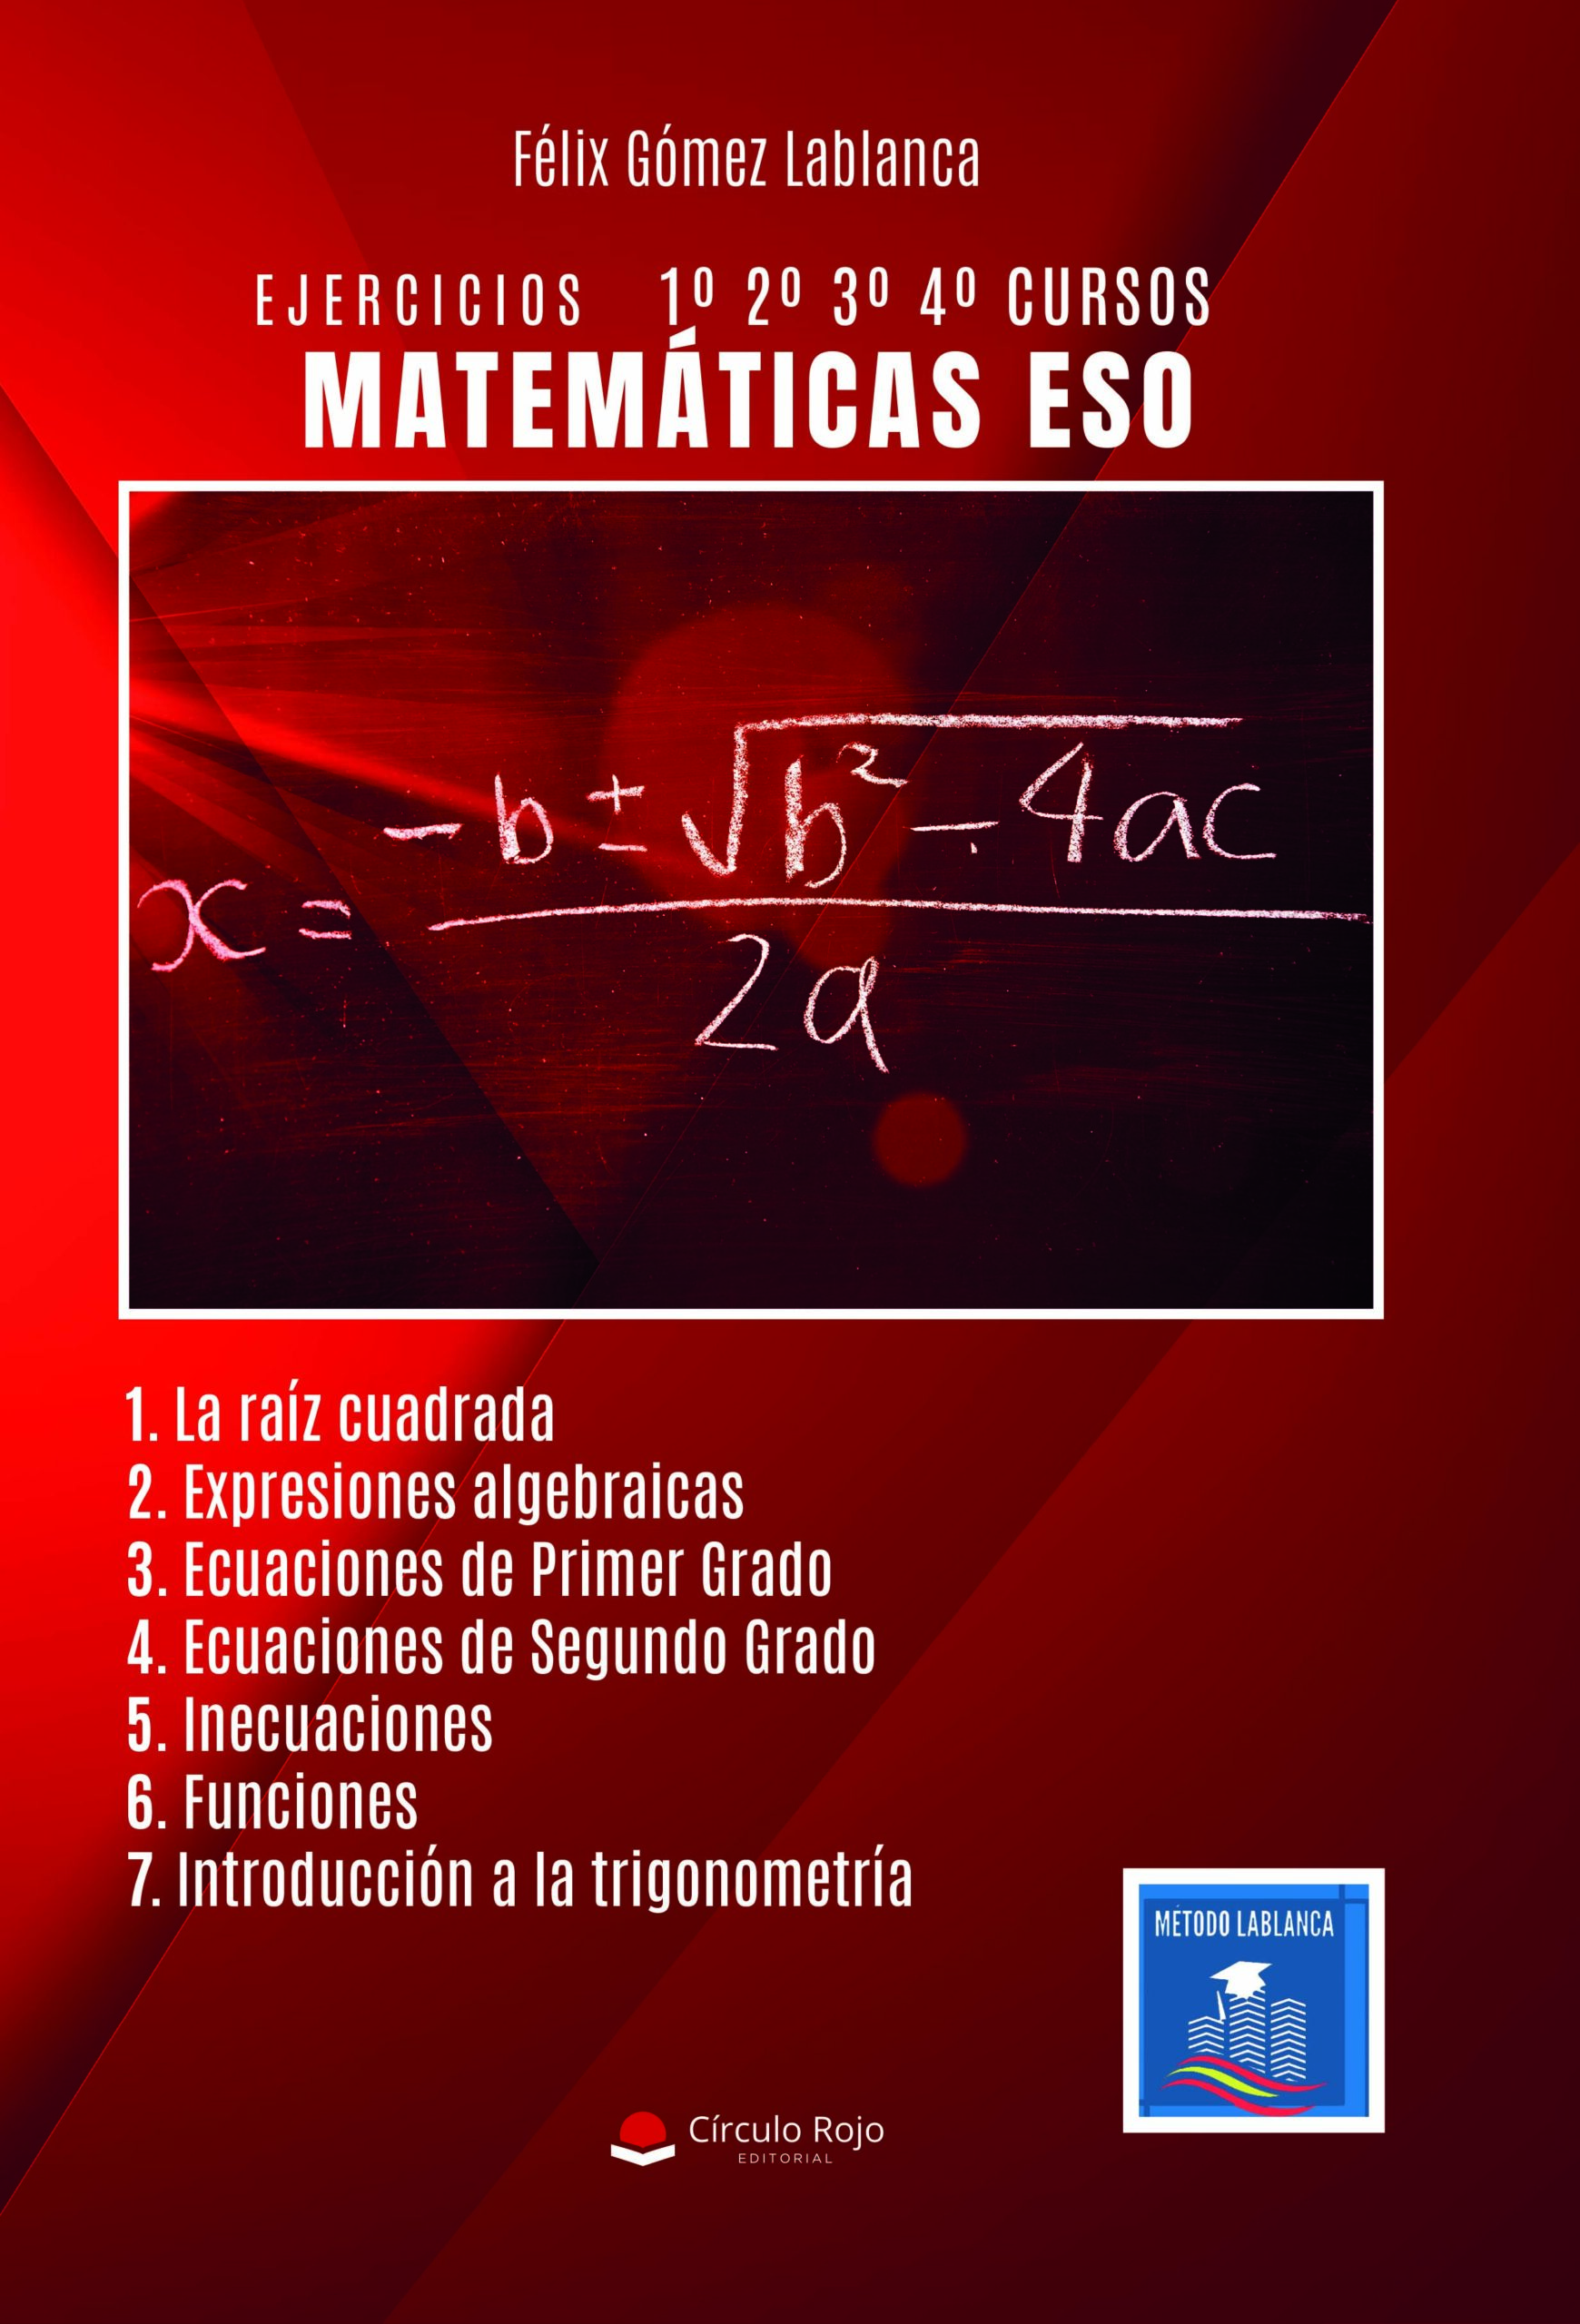 Matemáticas E.S.O. – EJERCICIOS